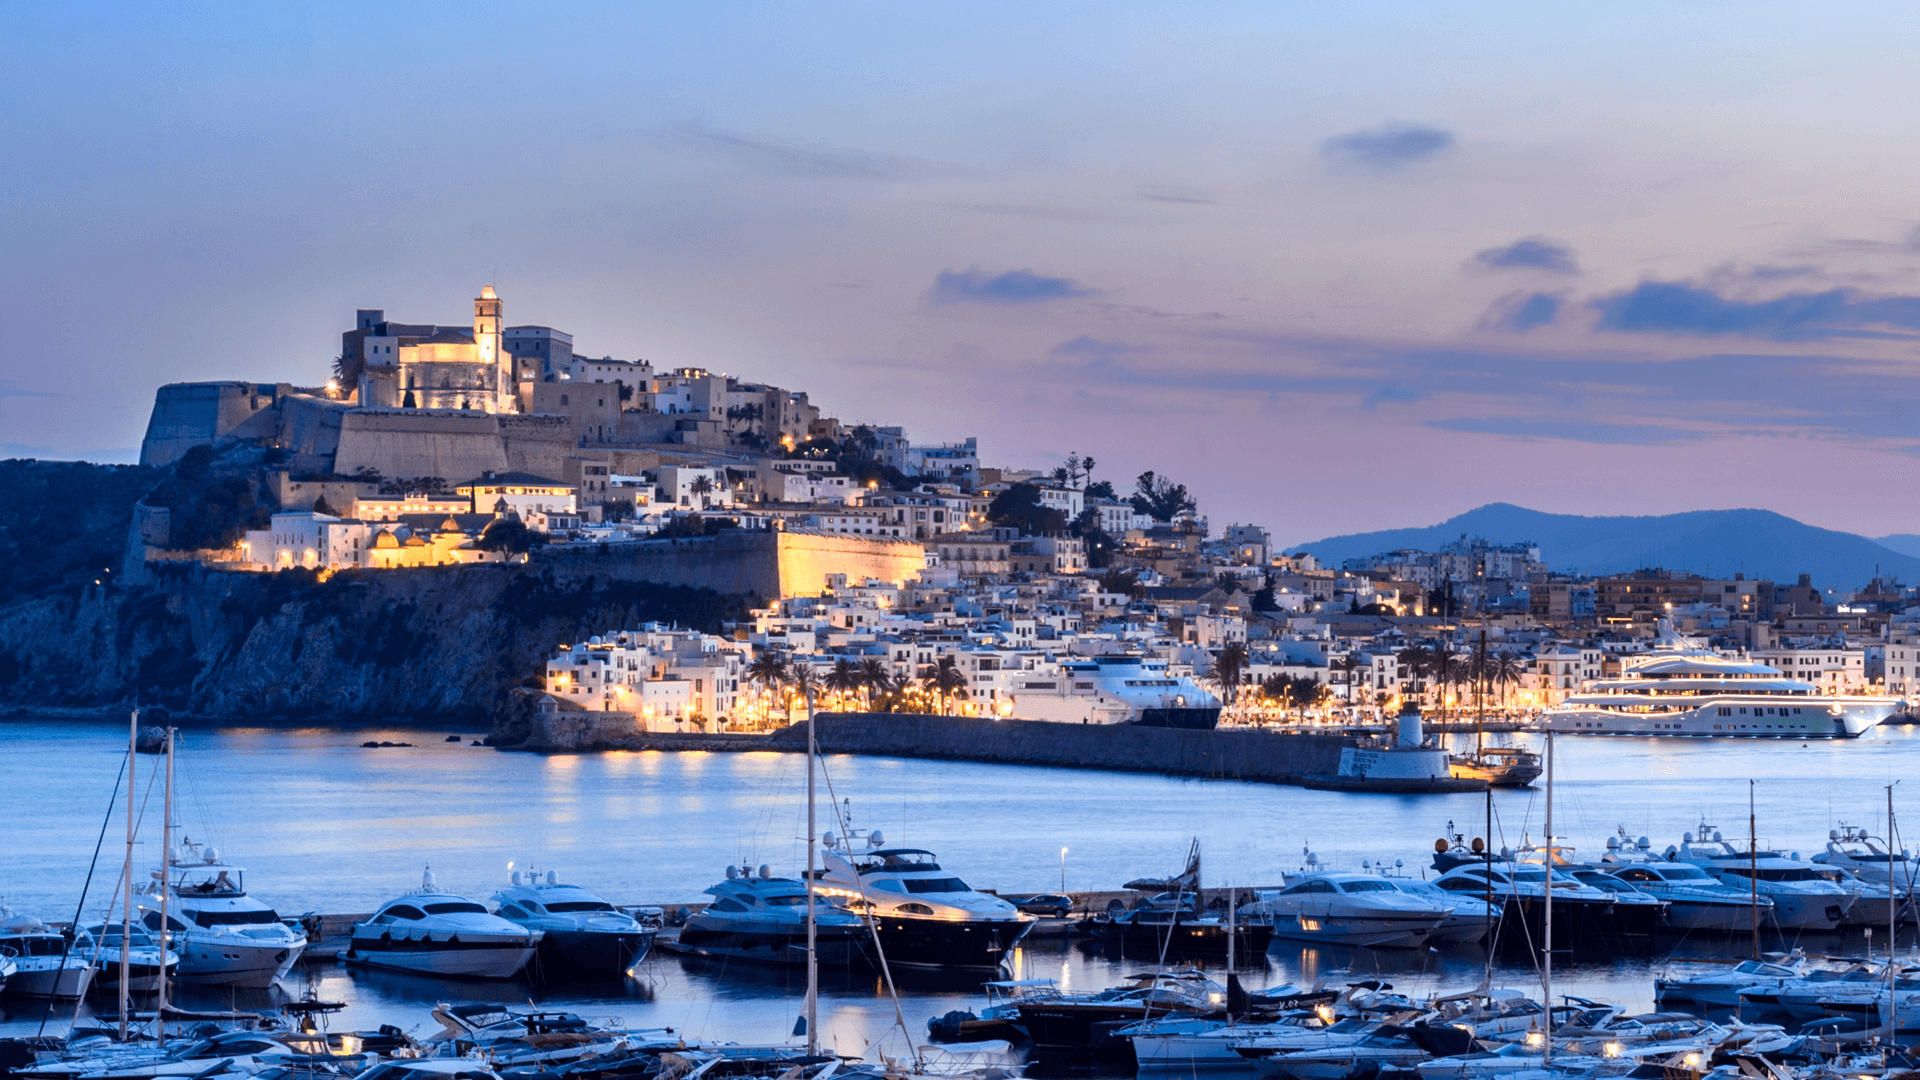 Ibiza, Espagne - 6 juin 2016 : Vue panoramique de la ville d'Ibiza et de son port au coucher du soleil. Le quartier monumental de Dalt Vila, inscrit au patrimoine mondial de l'humanité depuis 1999. Le port abrite de grands yachts.